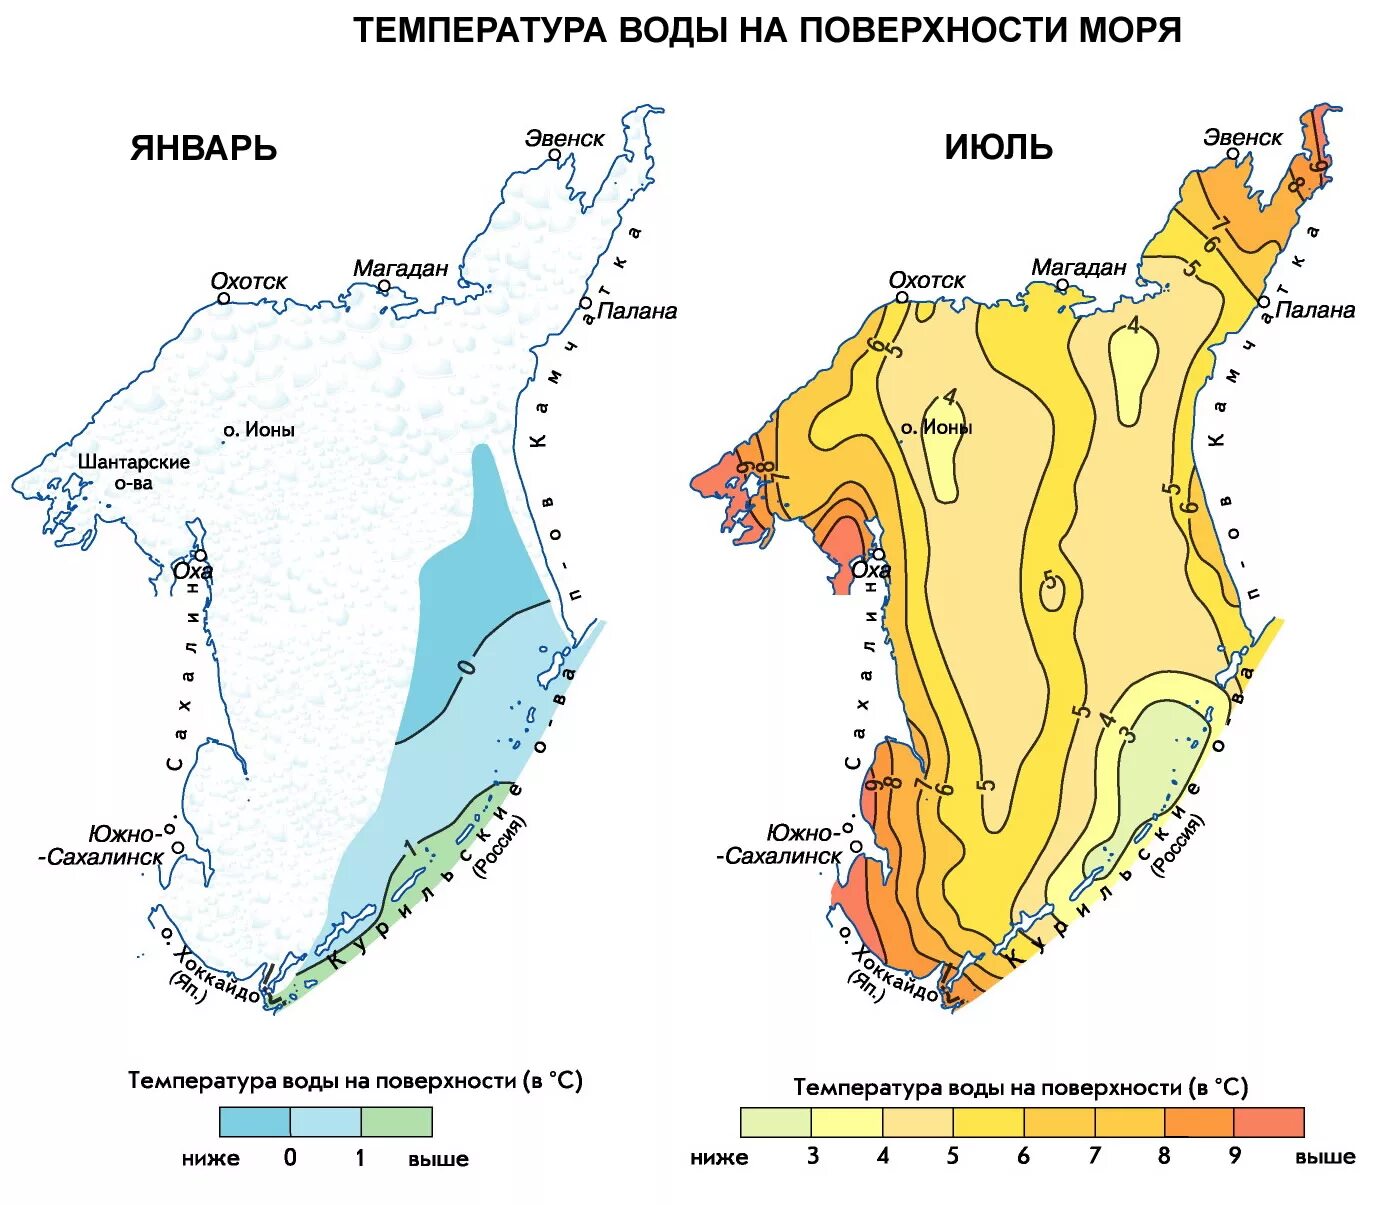 Карта температуры Охотского моря. Температурная карта Охотского моря. Температурный режим Охотского моря. Солёность Охотского моря в промилле.